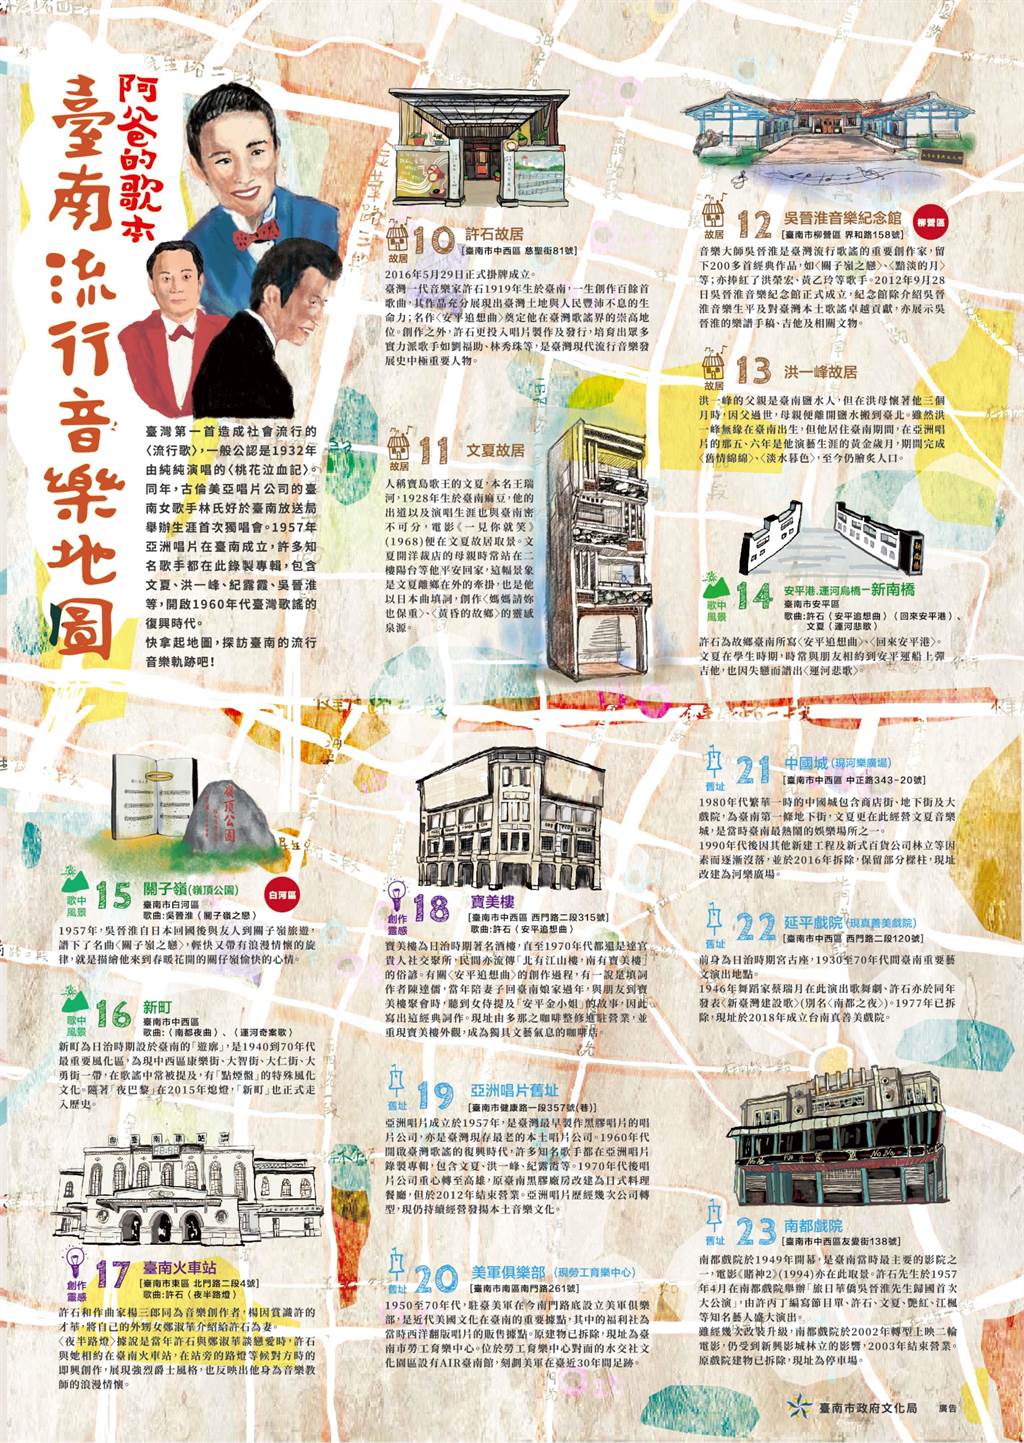 「臺南流行音樂地圖」引領大家探訪尋遊台南各地的音樂地景。(曹婷婷攝)